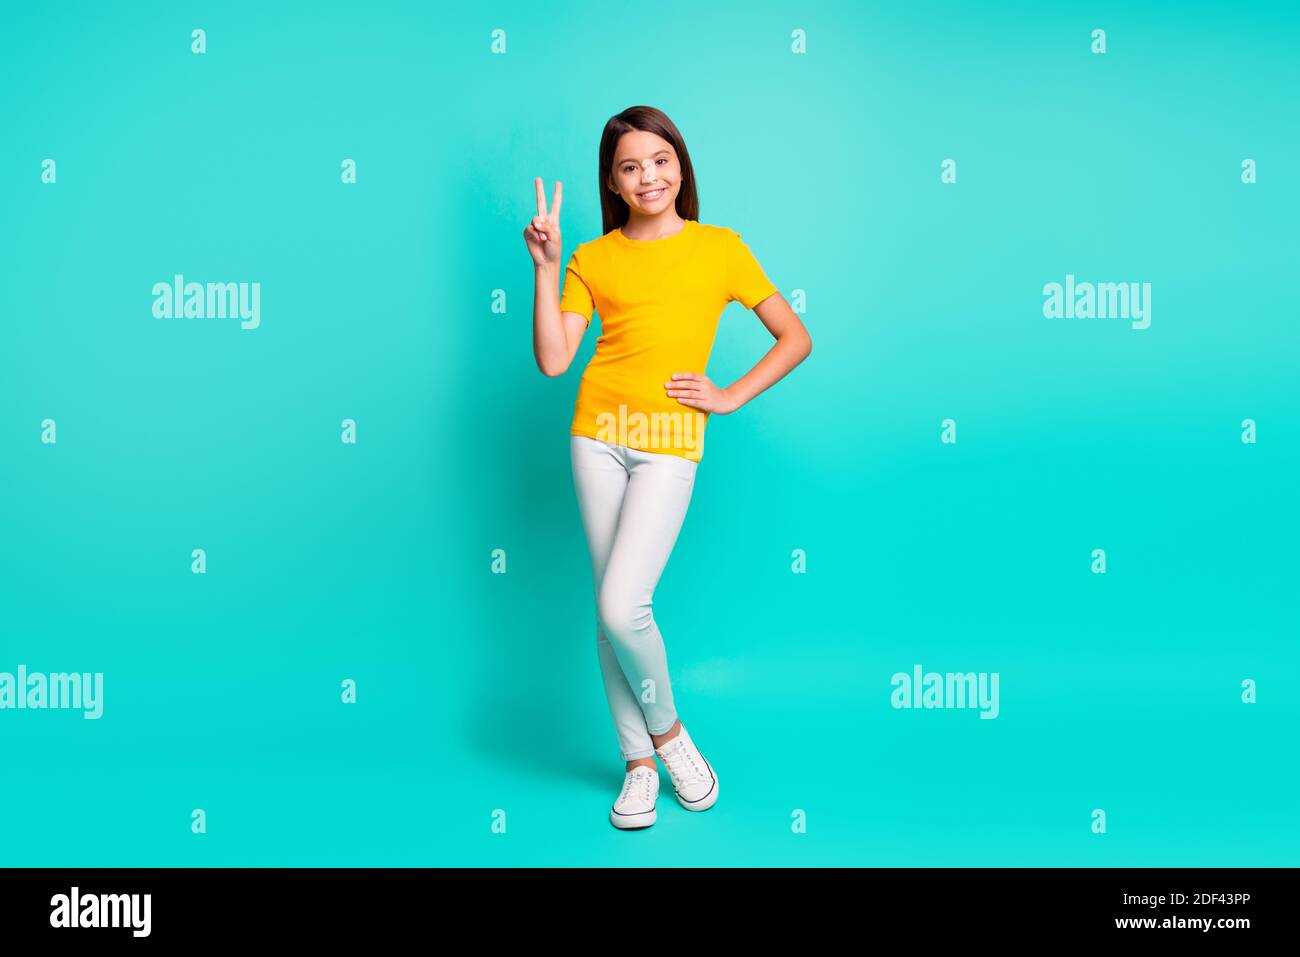 Foto a dimensione intera di ragazza positiva di capretto fa selfie in piedi isolato su sfondo di colore teal Foto Stock